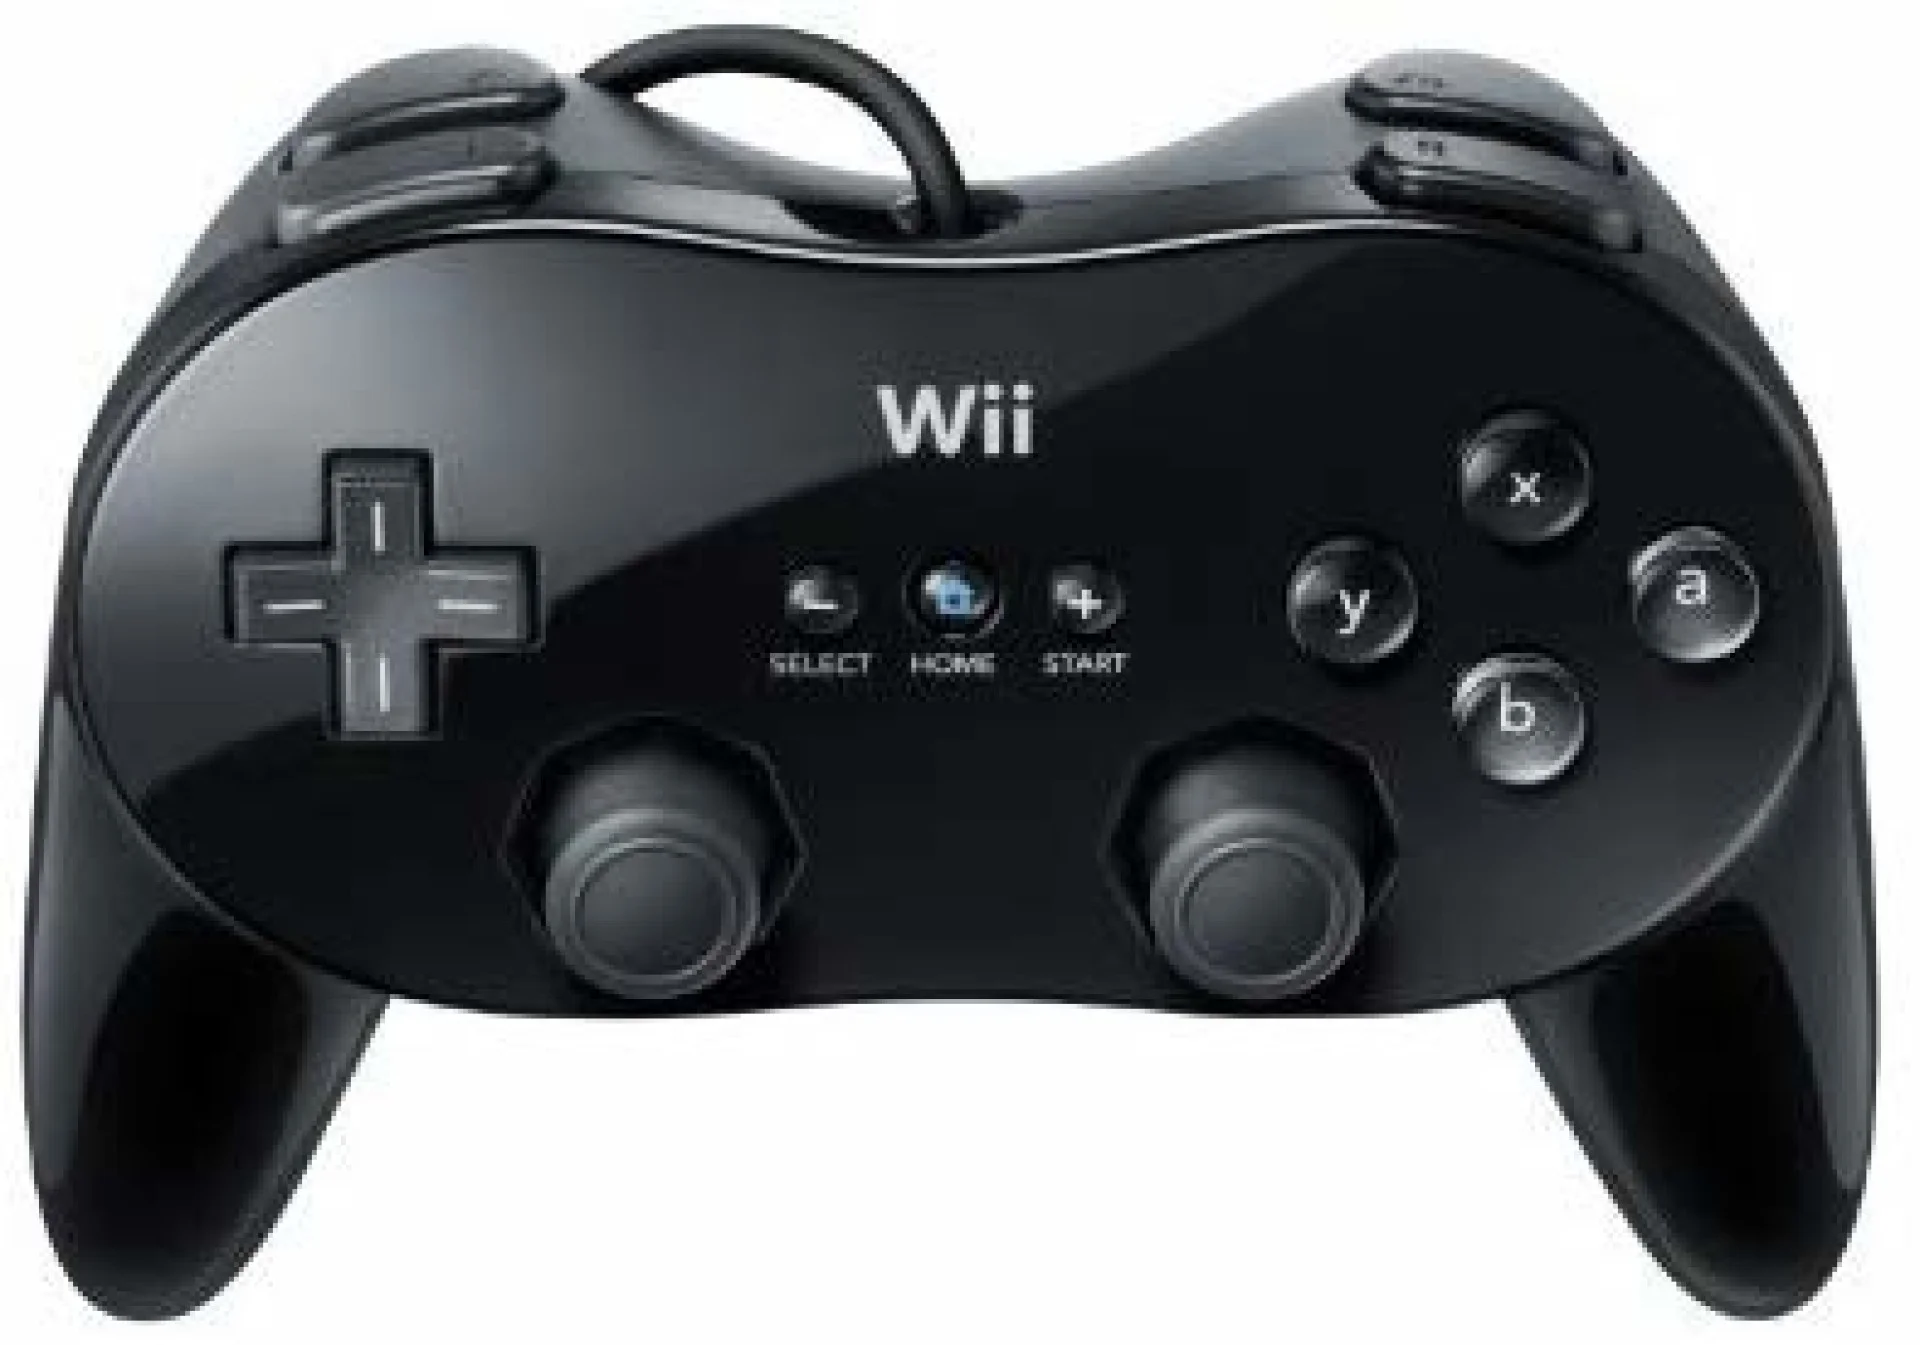  Nintendo Wii Classic Pro Black Controller [AUS]